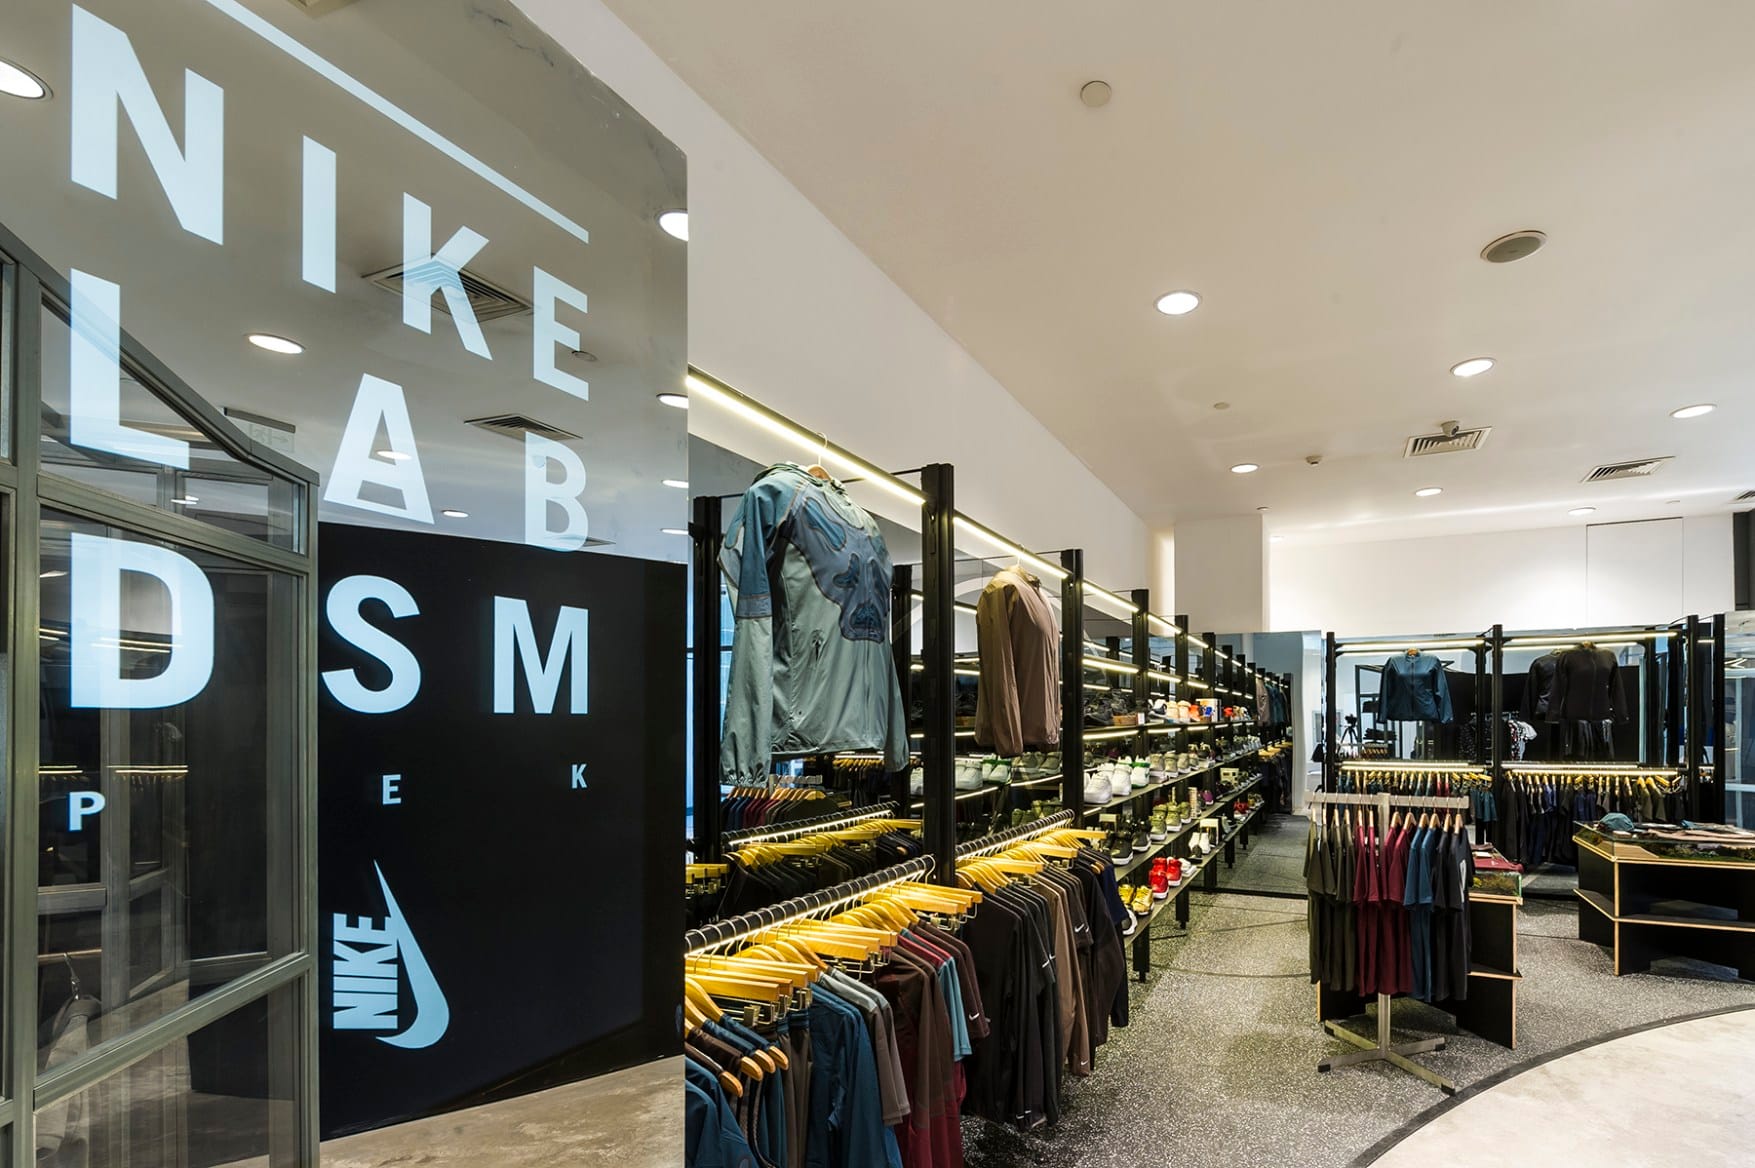 Beijing's NikeLab DSM PEK | HYPEBEAST